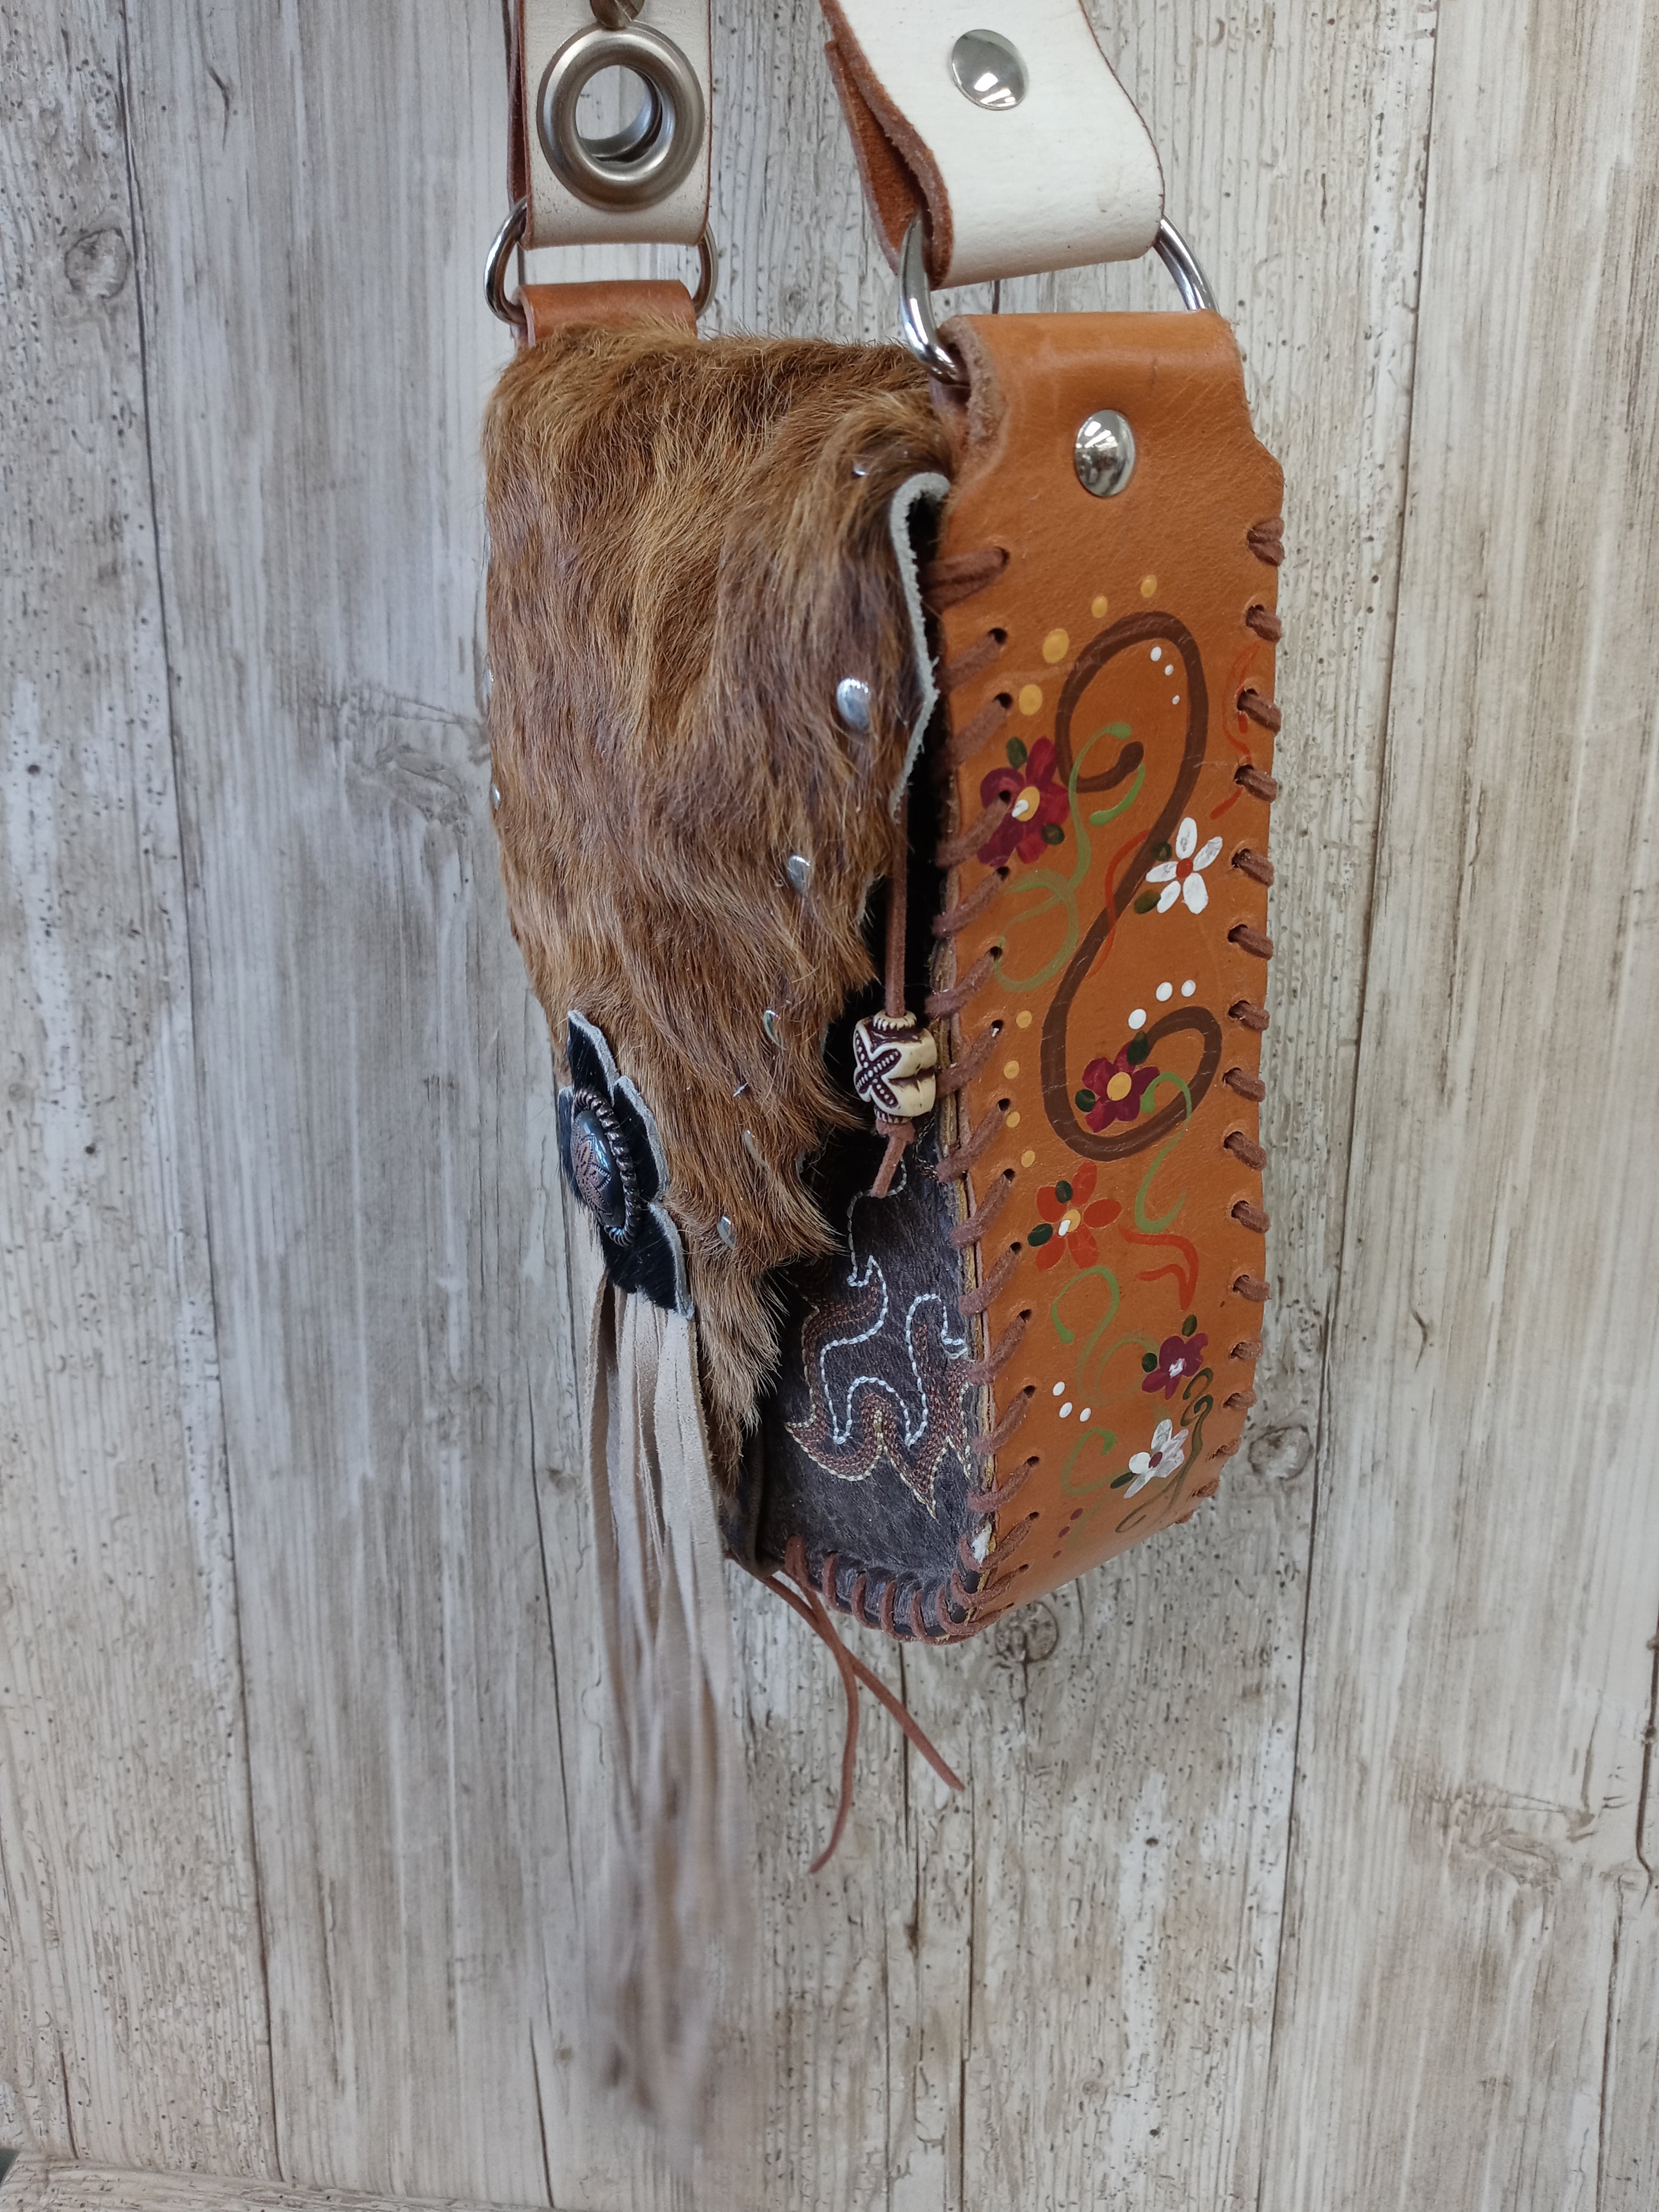 Hair on Hide Bag - Cowboy Boot Purse - Cowhide Purse - Handpainted Purse SB04 Chris Thompson Bags